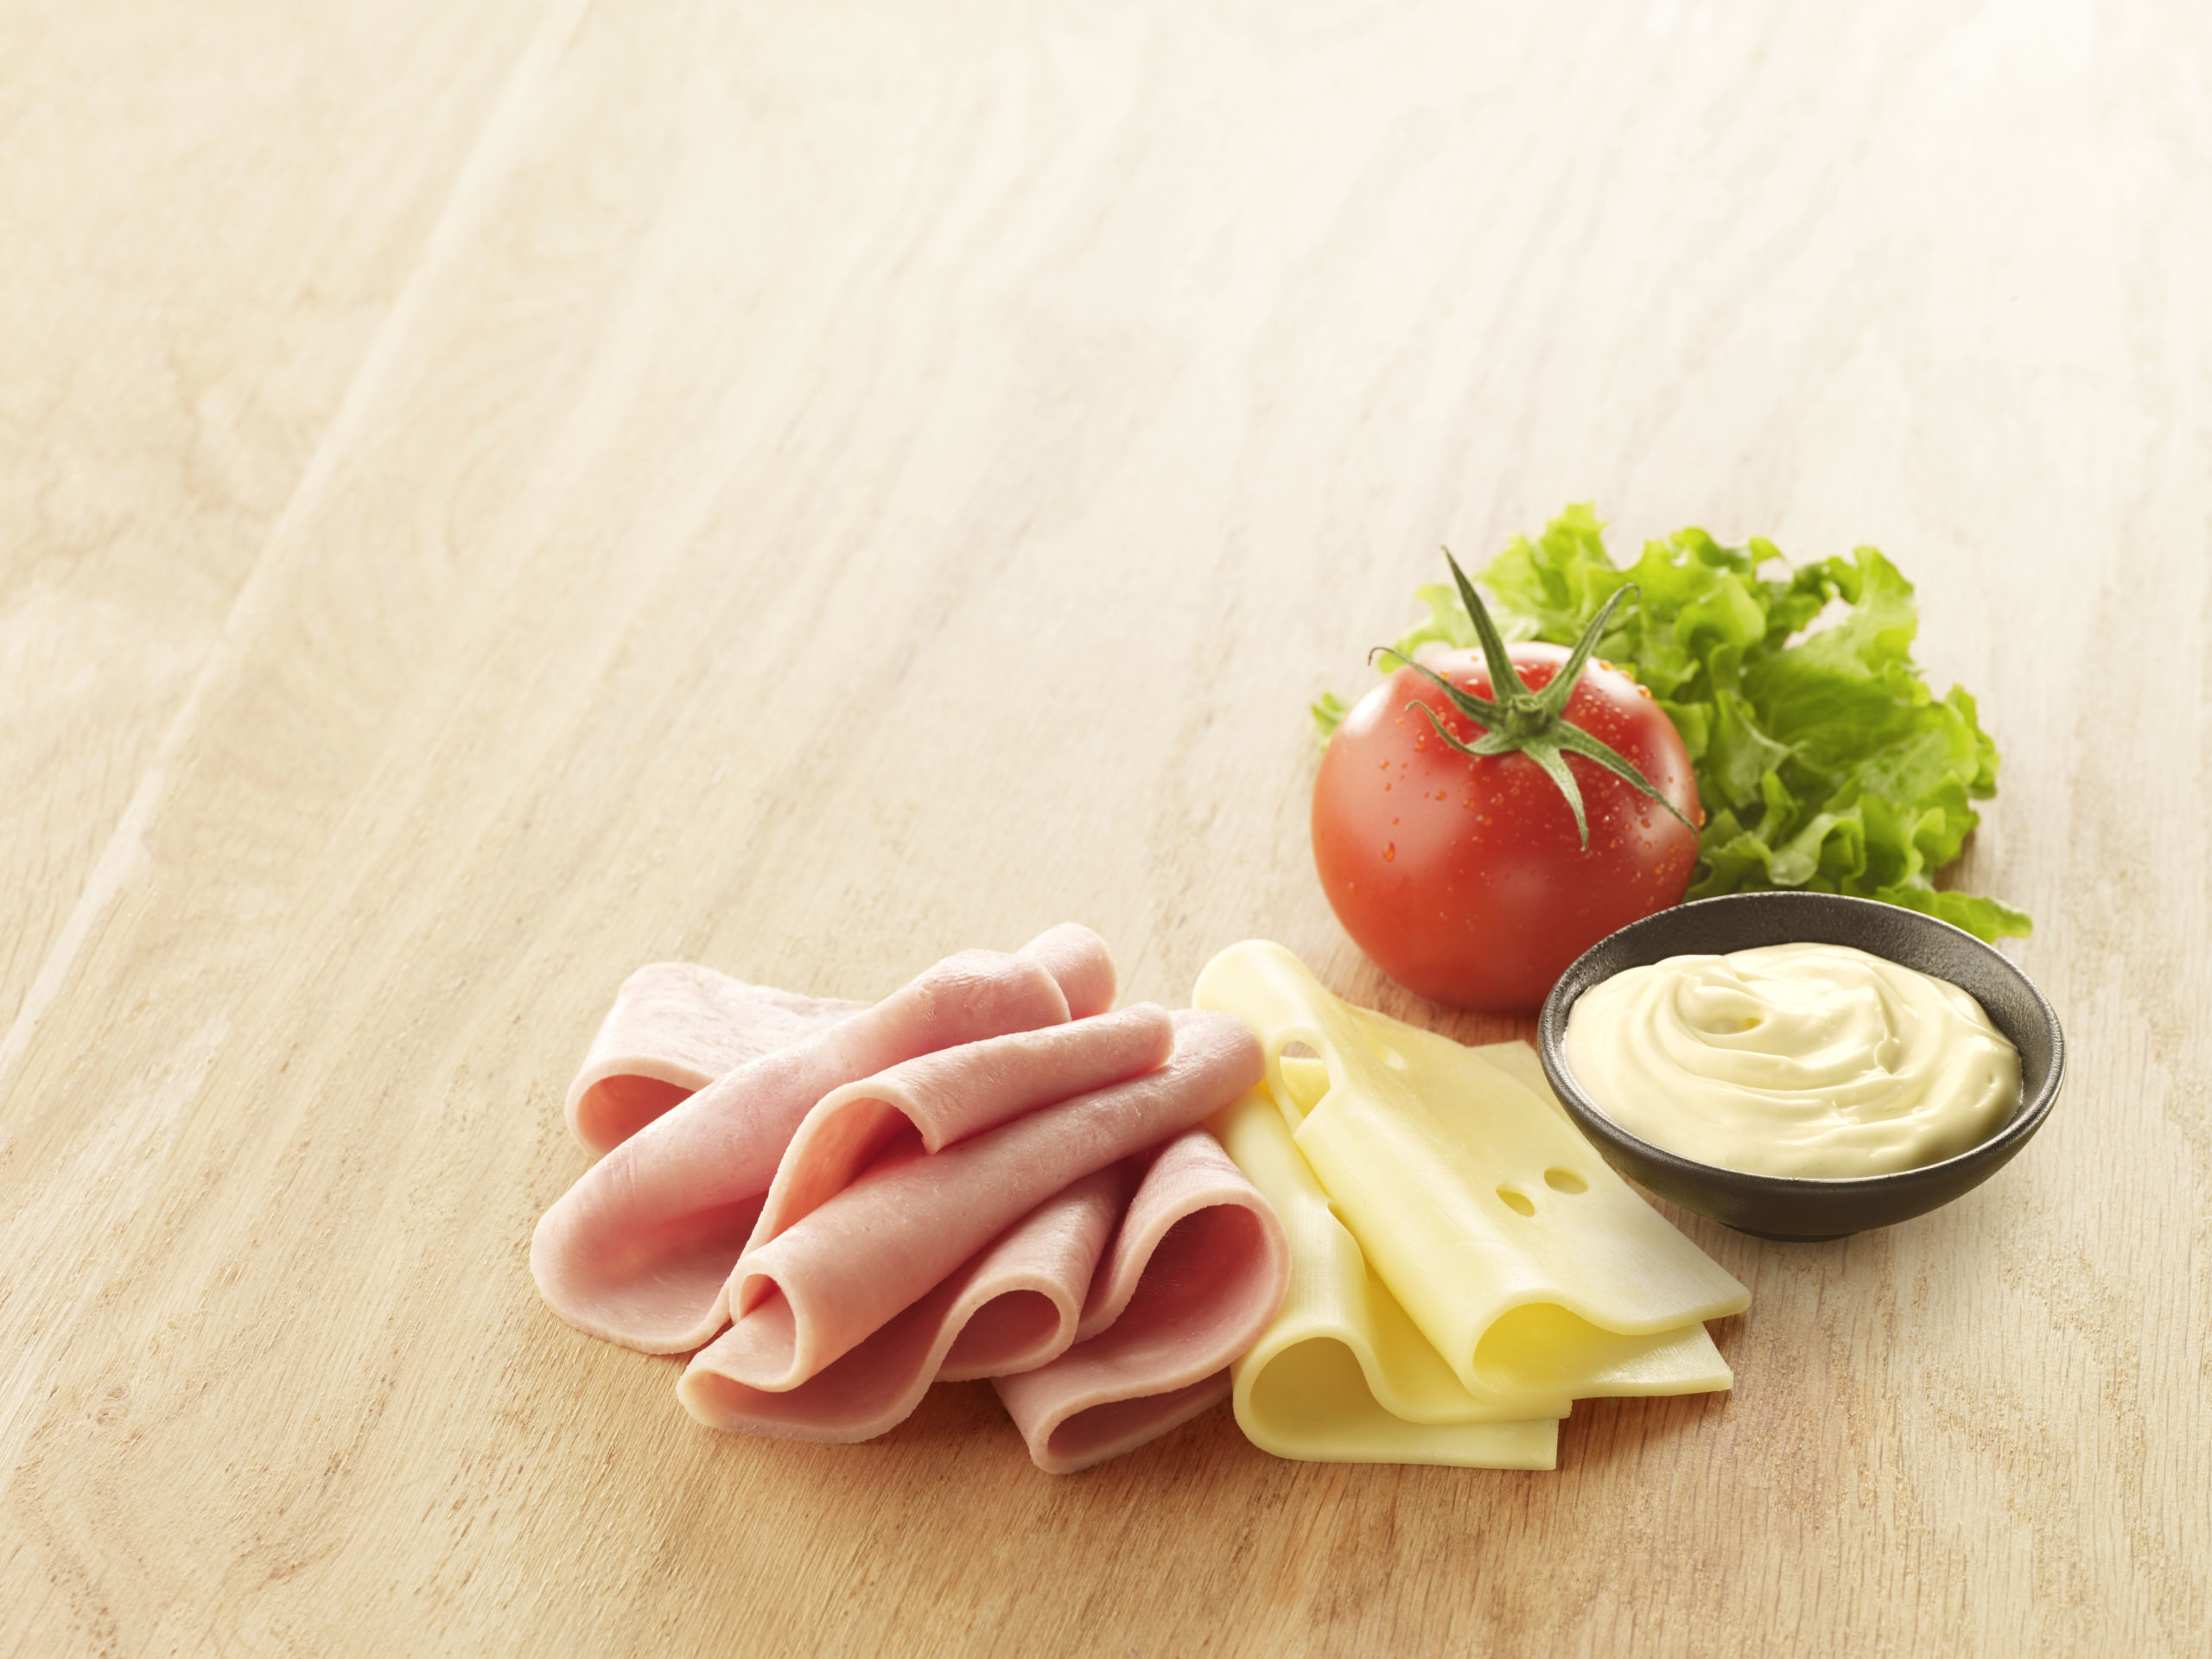 Visuel tranche maxi club avec jambon emmental tomate mayo et salade sur planche en bois